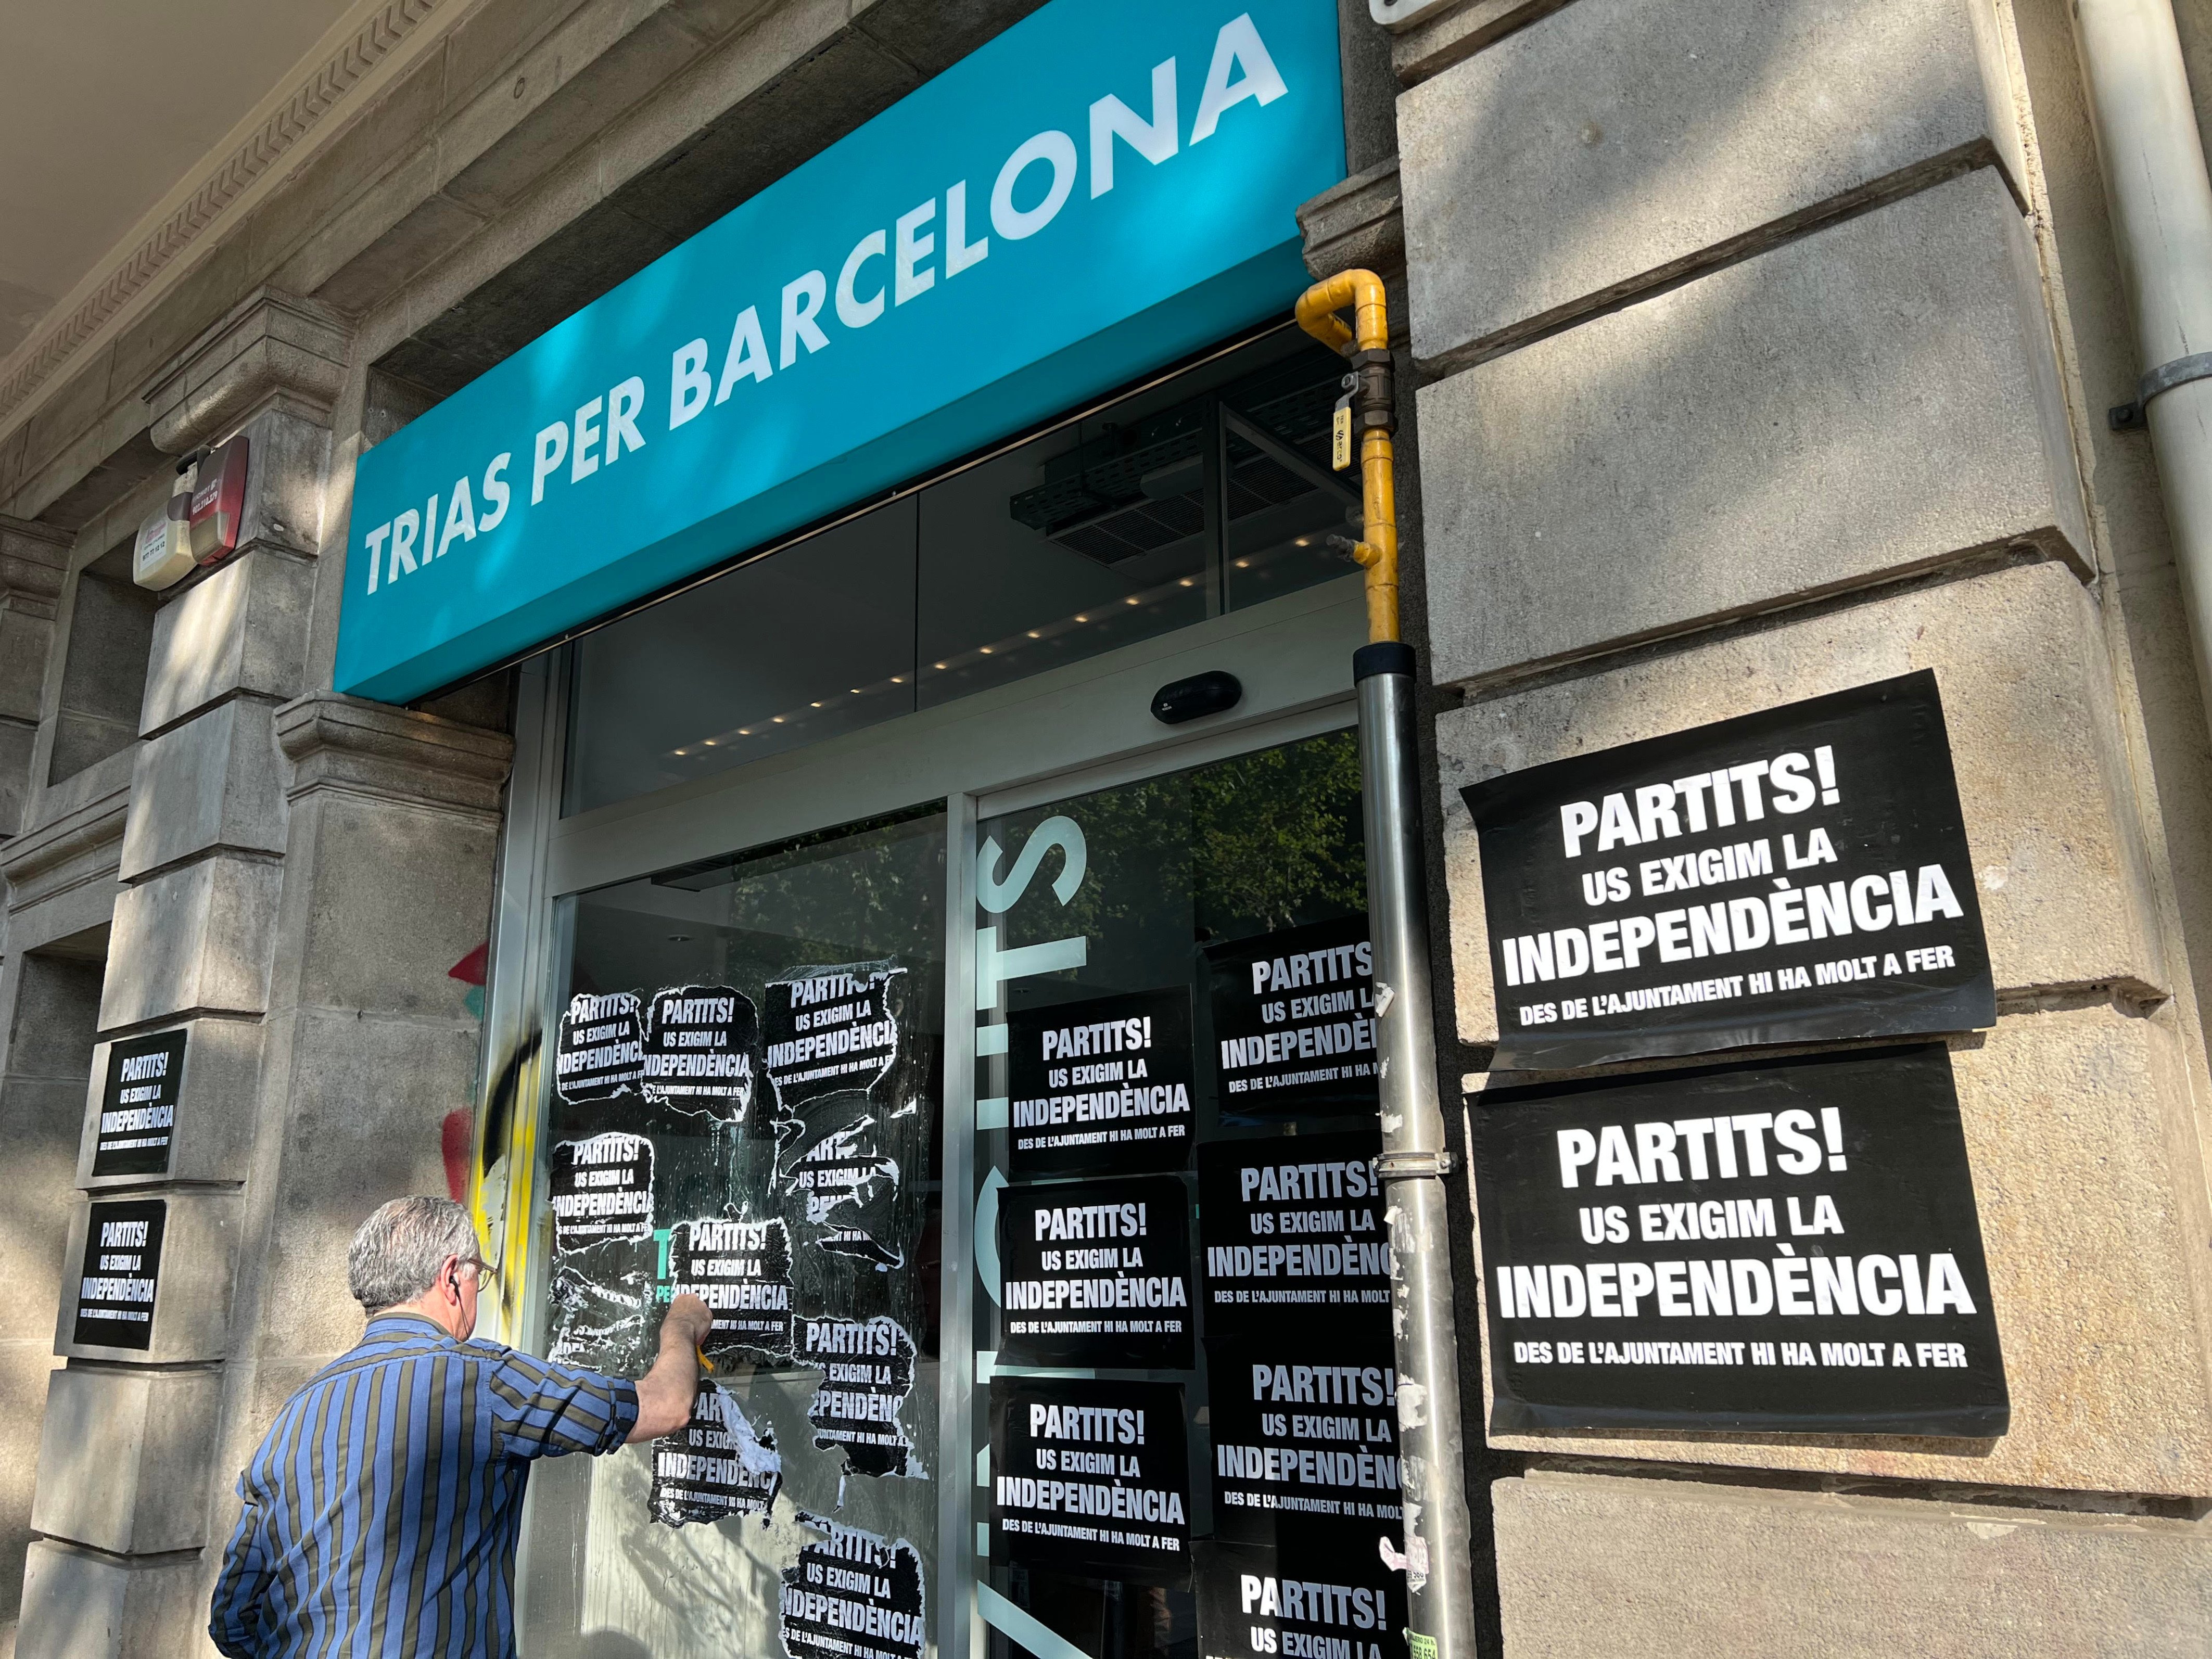 Apareixen cartells independentistes a la seu de Trias, Maragall i la CUP: "Us l'exigim"